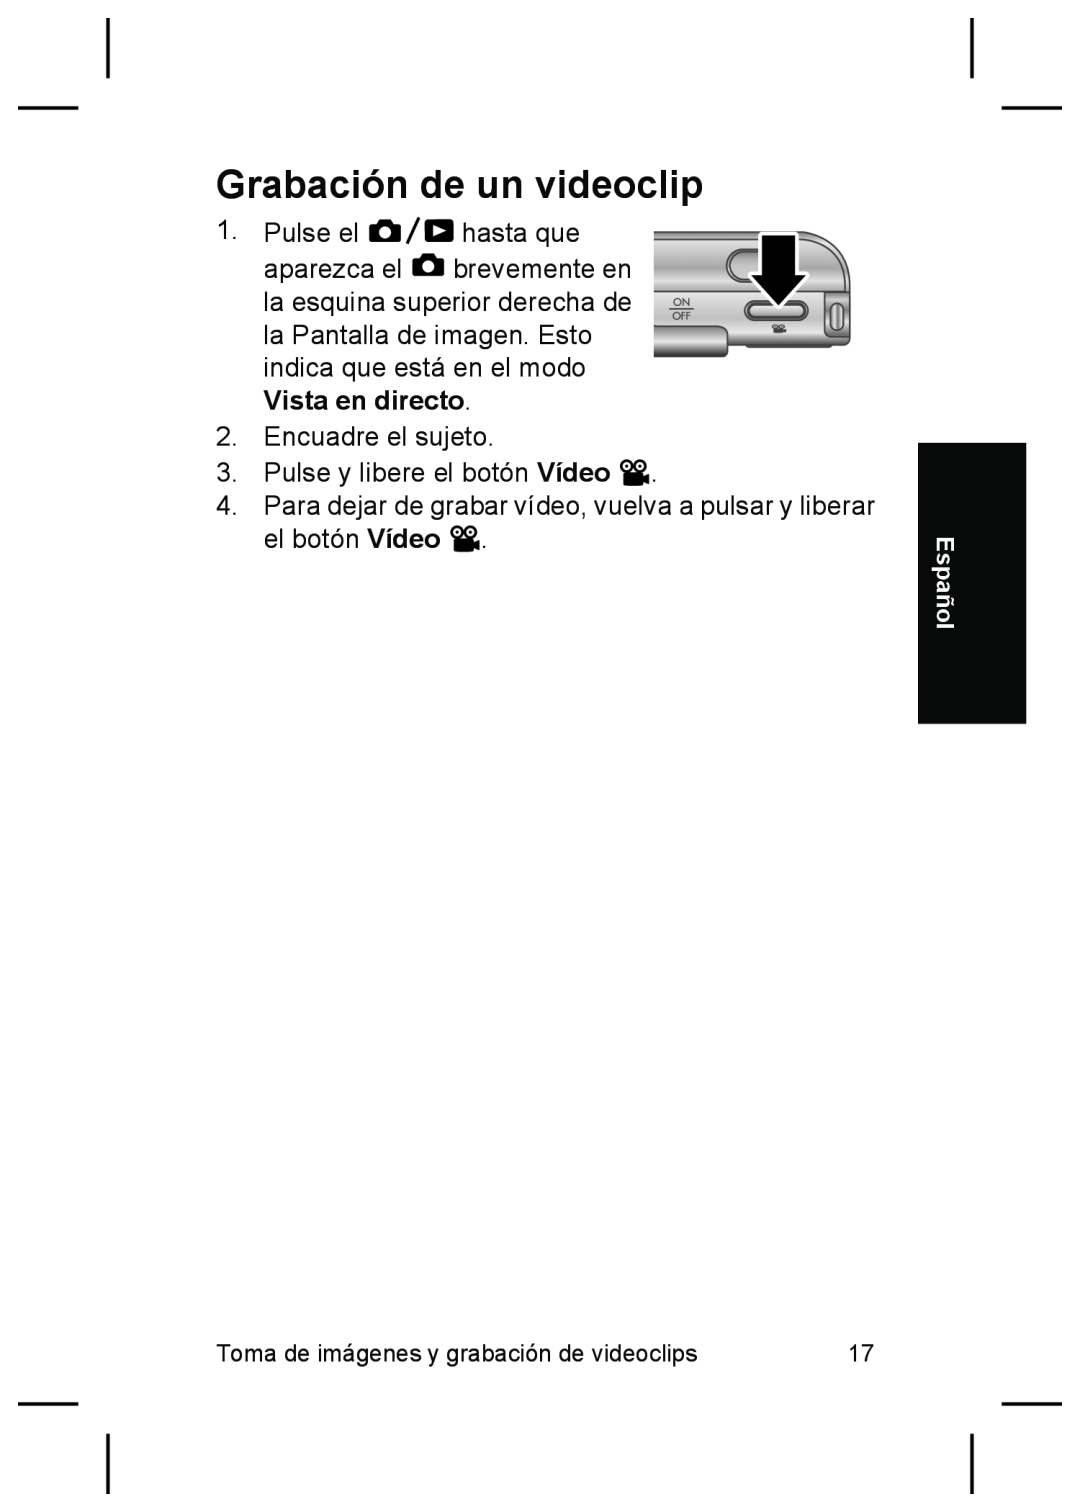 HP R927 manual Grabación de un videoclip, Toma de imágenes y grabación de videoclips, Español 